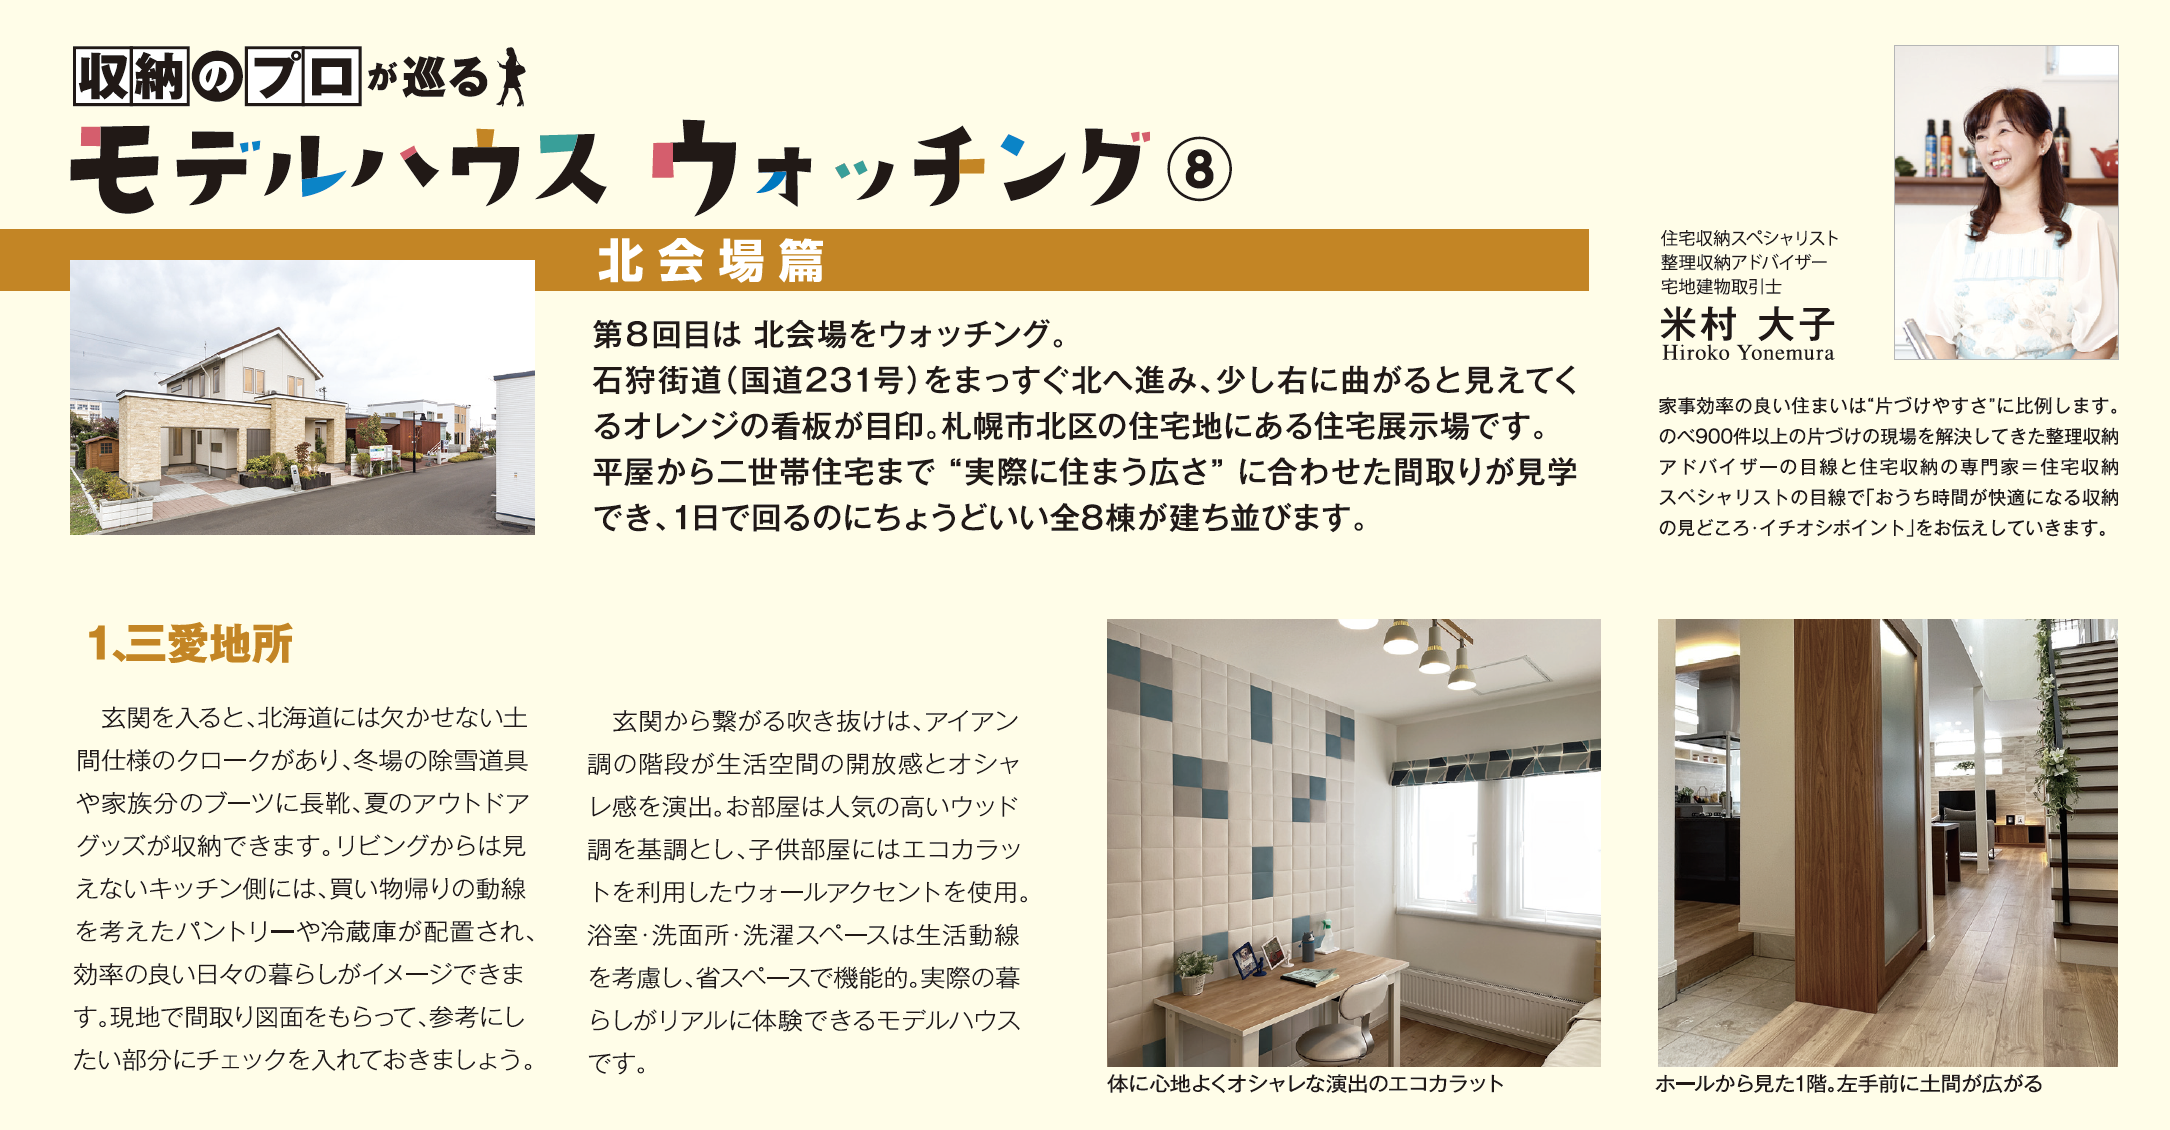 北海道新聞折り込み収納のプロが巡るモデルハウスウォッチング3月号画像